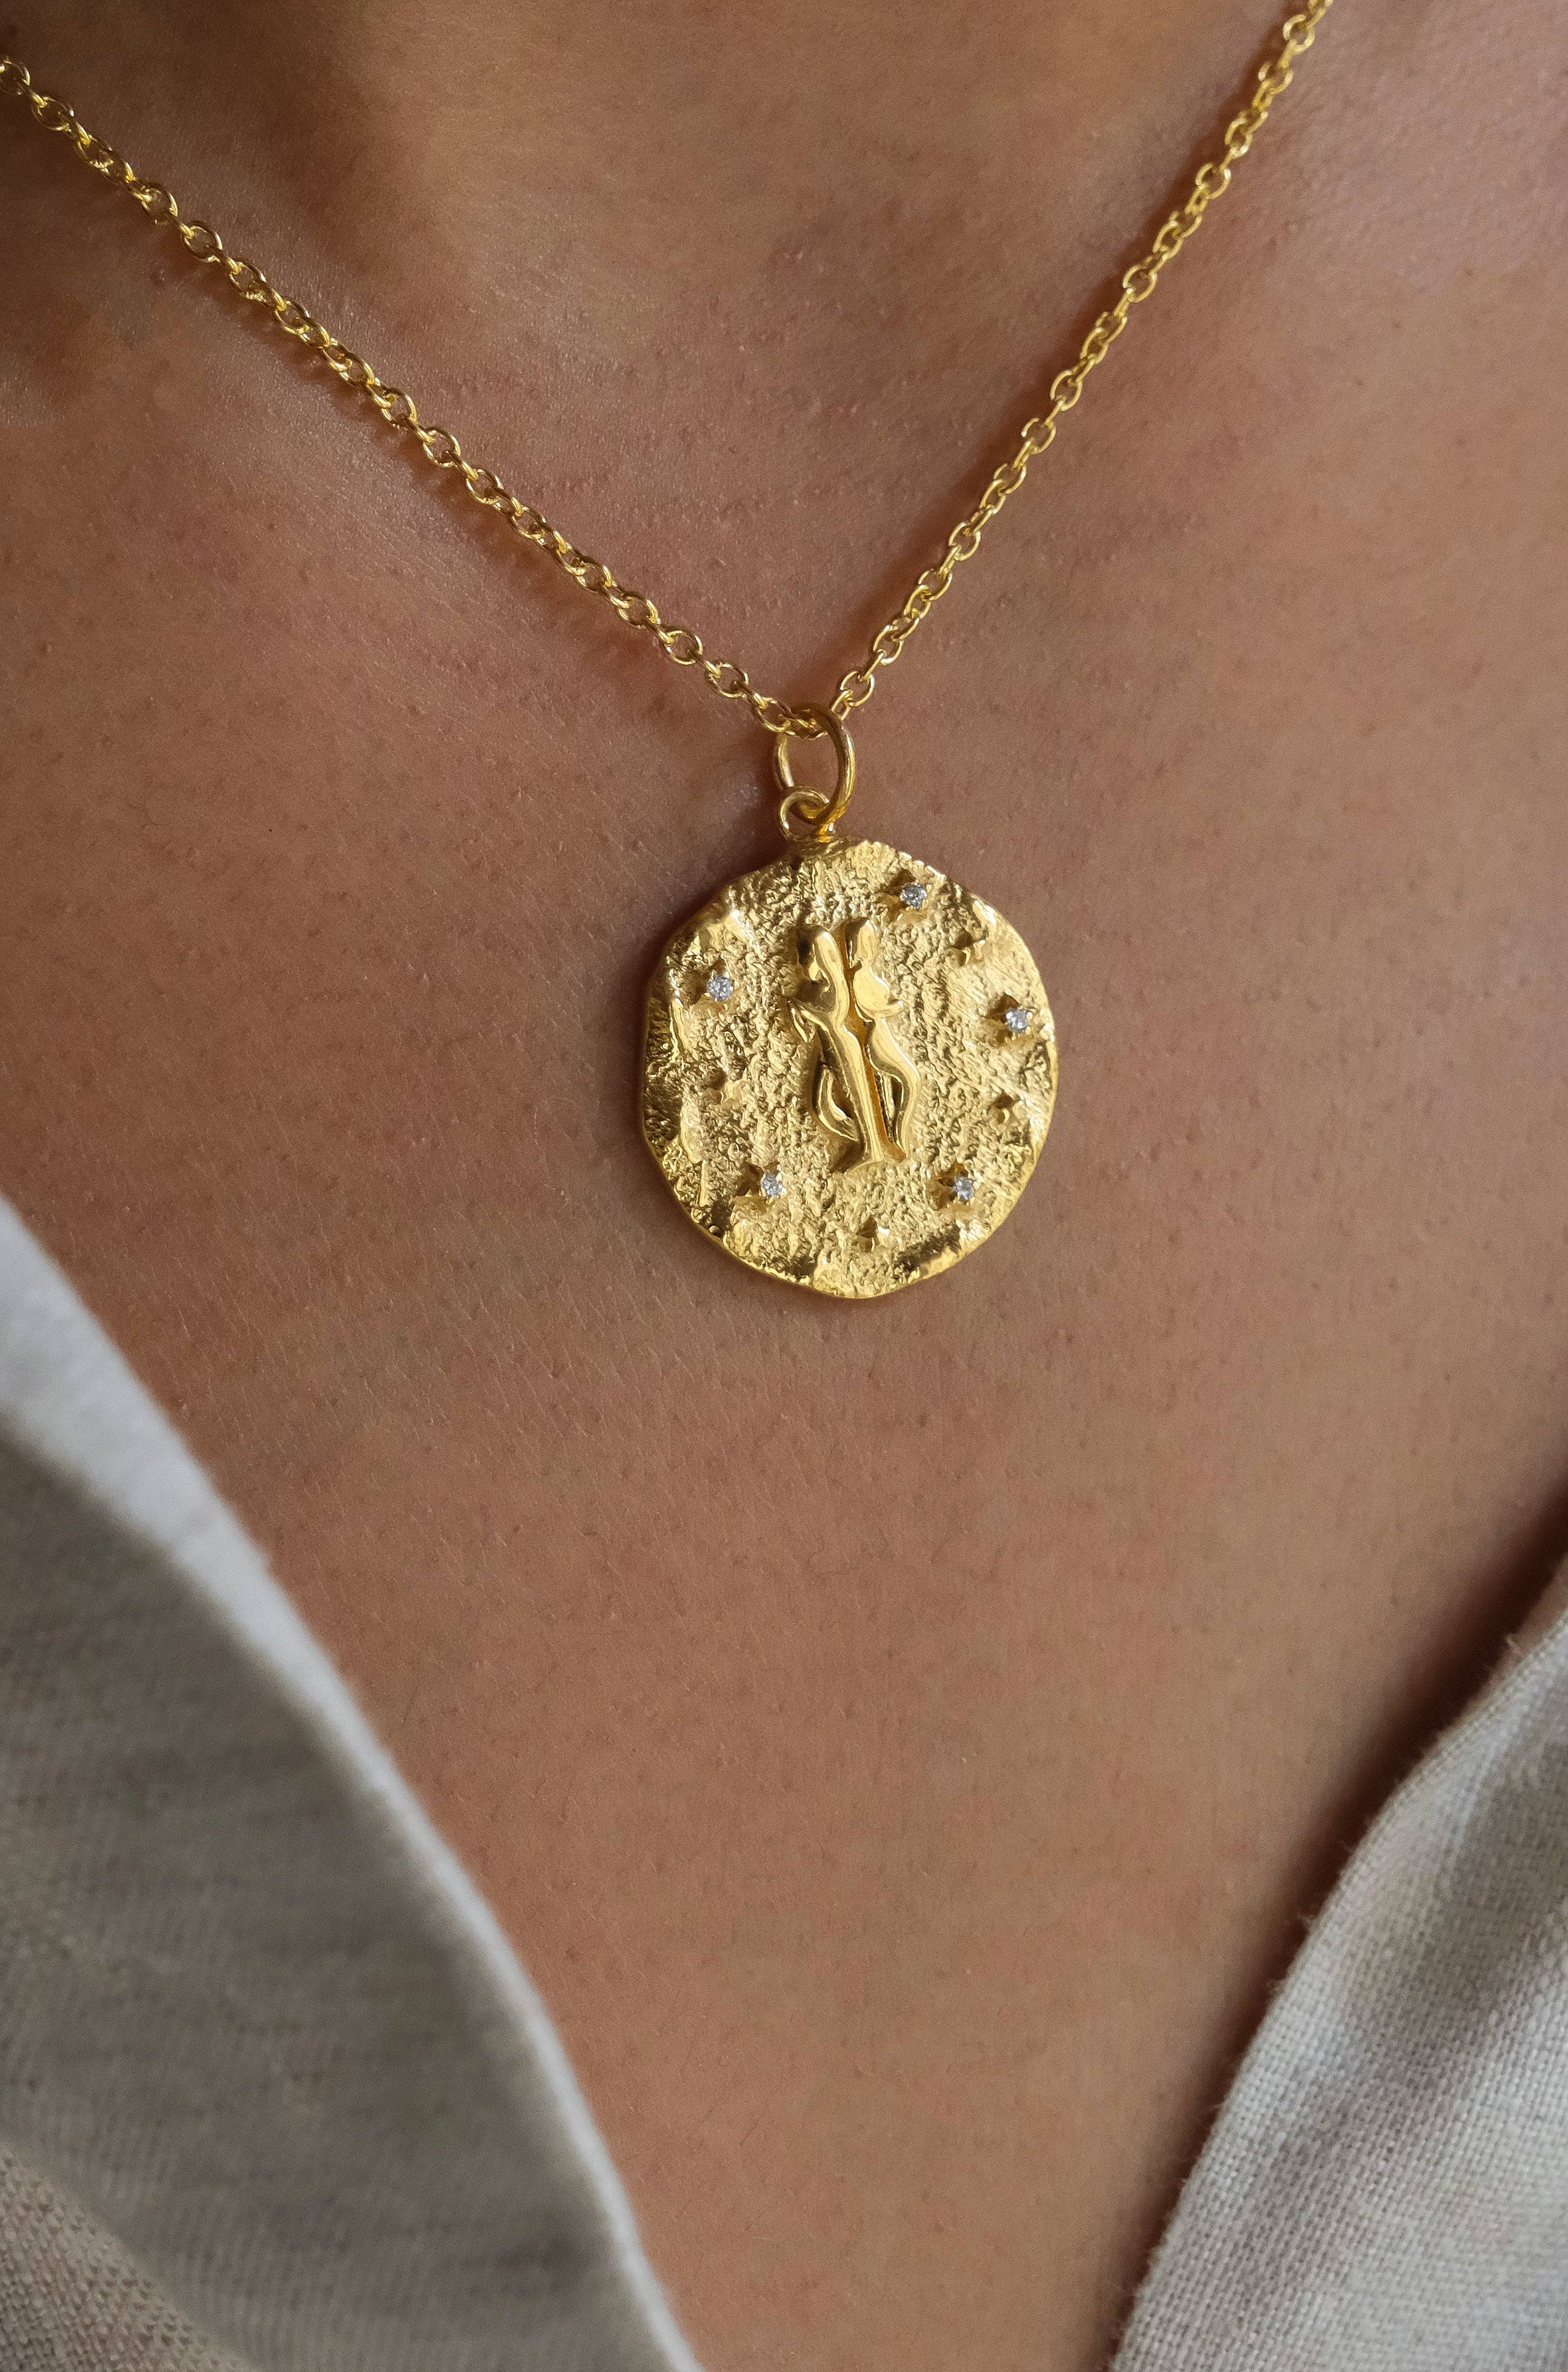 Gemini - Necklace by Astrodisiac Paris : Astrological Jewels & Necklace  by Claire Naa – Astrodisiac Paris - Parfums et Colliers sur les signes du  zodiaque